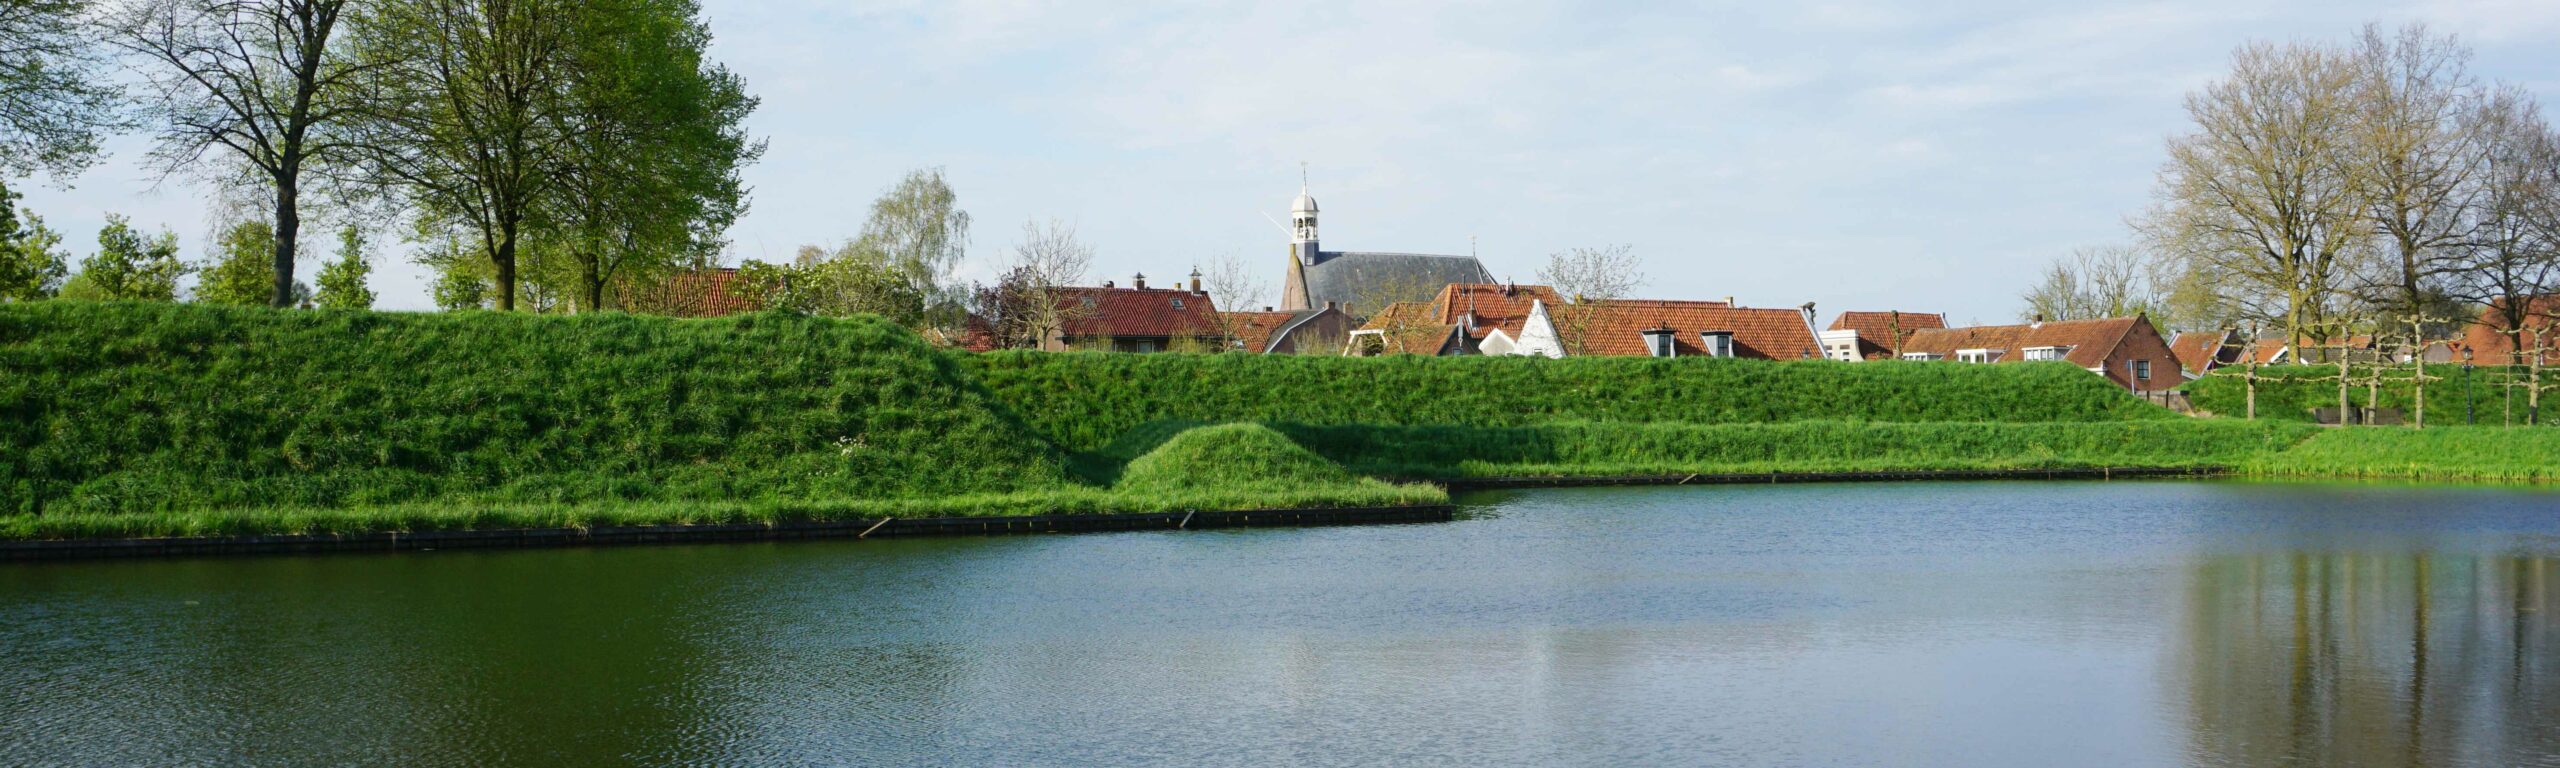 Nieuwpoort, kleinste stad van Zuid-Holland